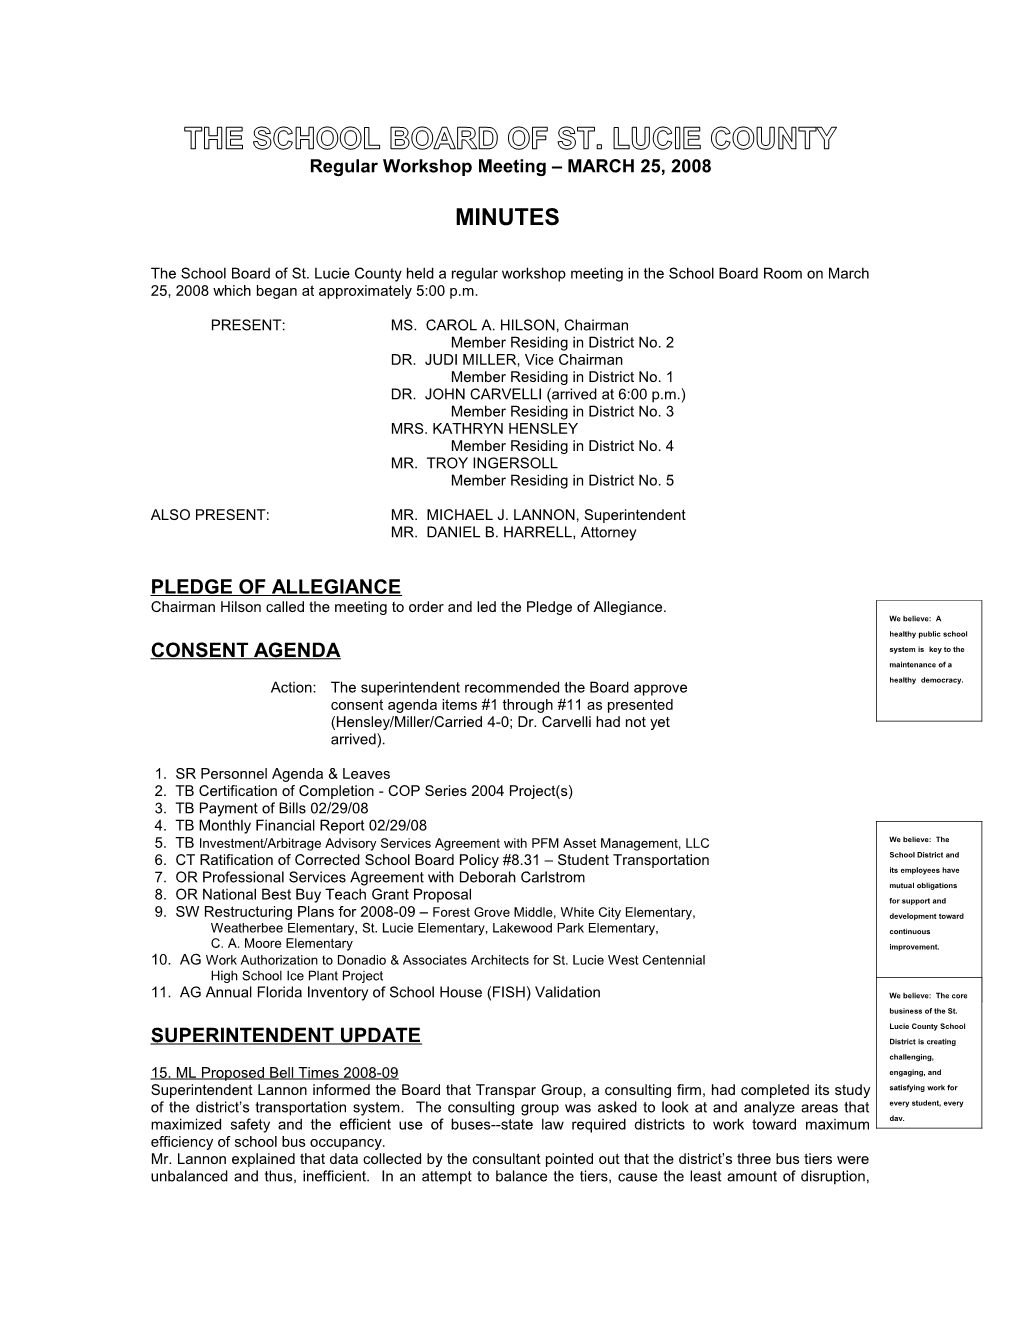 03-25-08 SLCSB Regular Workshop Minutes